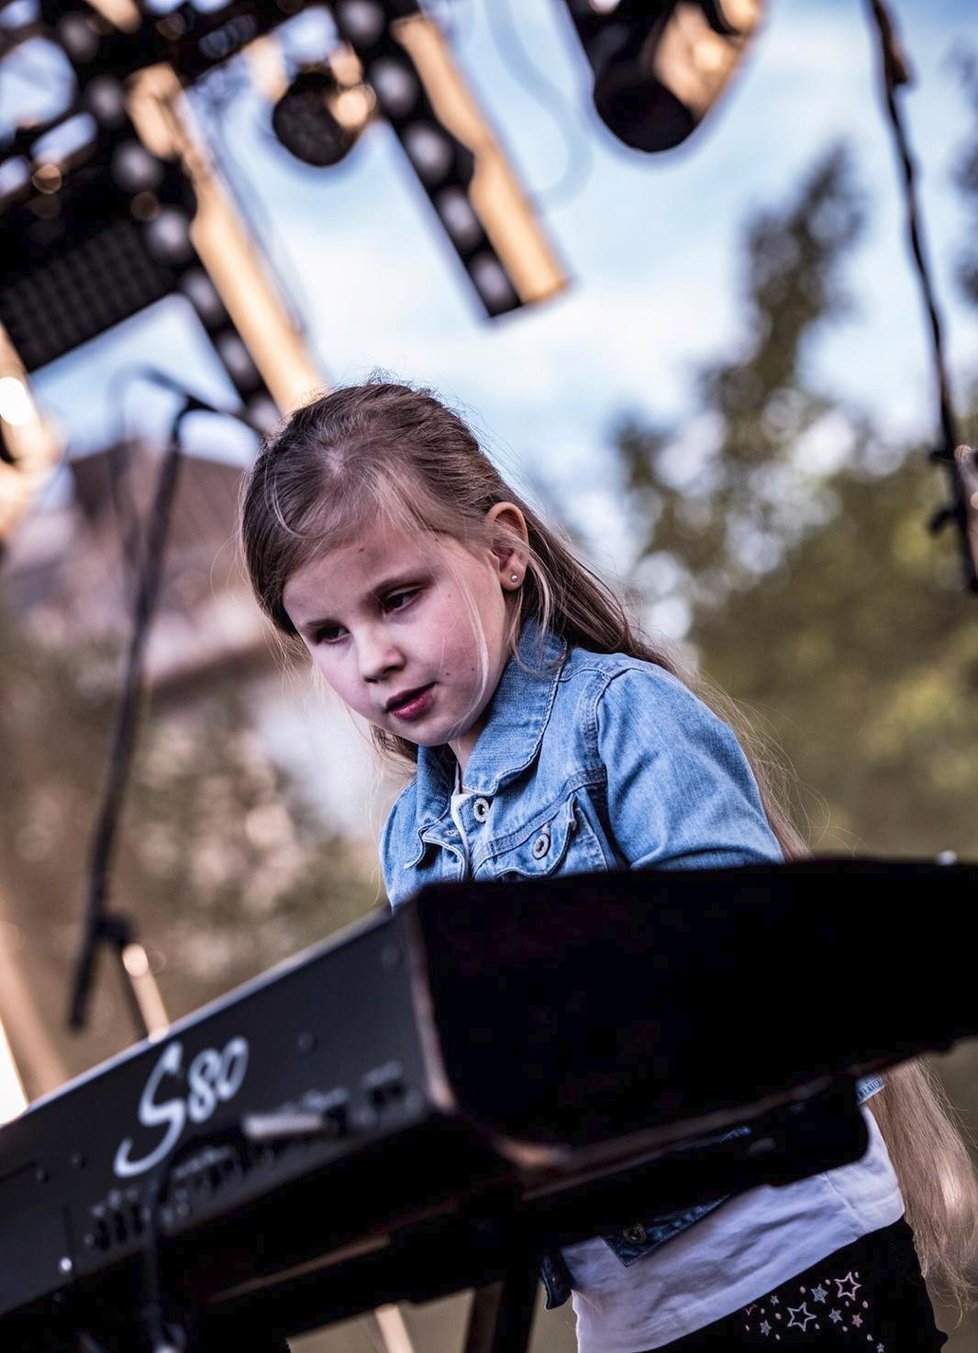 Sárinka zahrála na klavír na festivalu před 700 lidmi.